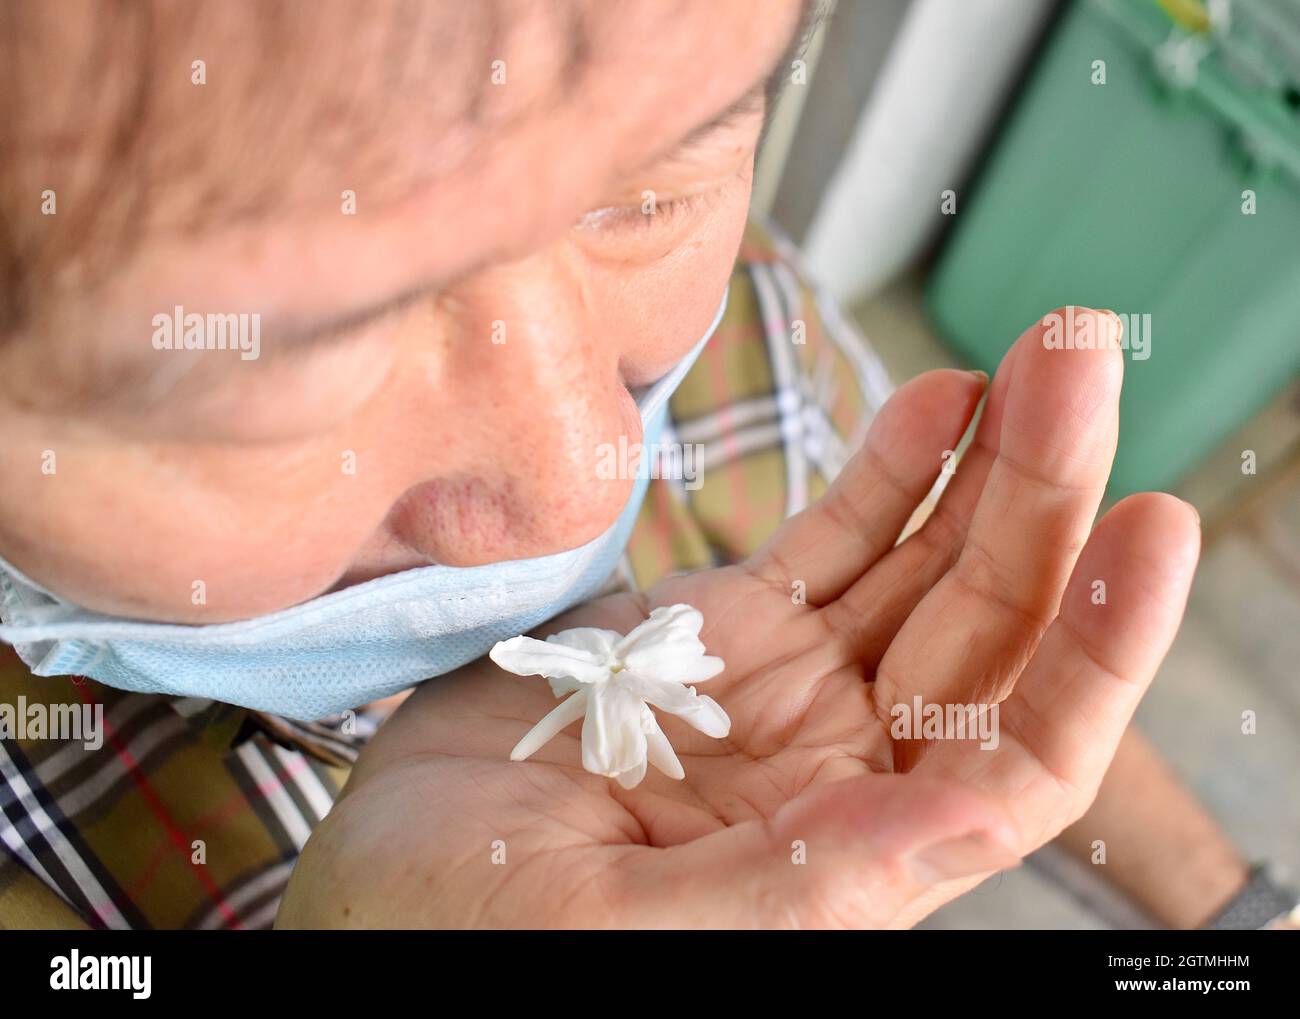 Le vieil homme de l'Asie du Sud-est, de la Chine et du Myanmar atteint la grippe froide perd l'odeur appelée anosmia. Il sent le parfum de la fleur de jasmin Banque D'Images